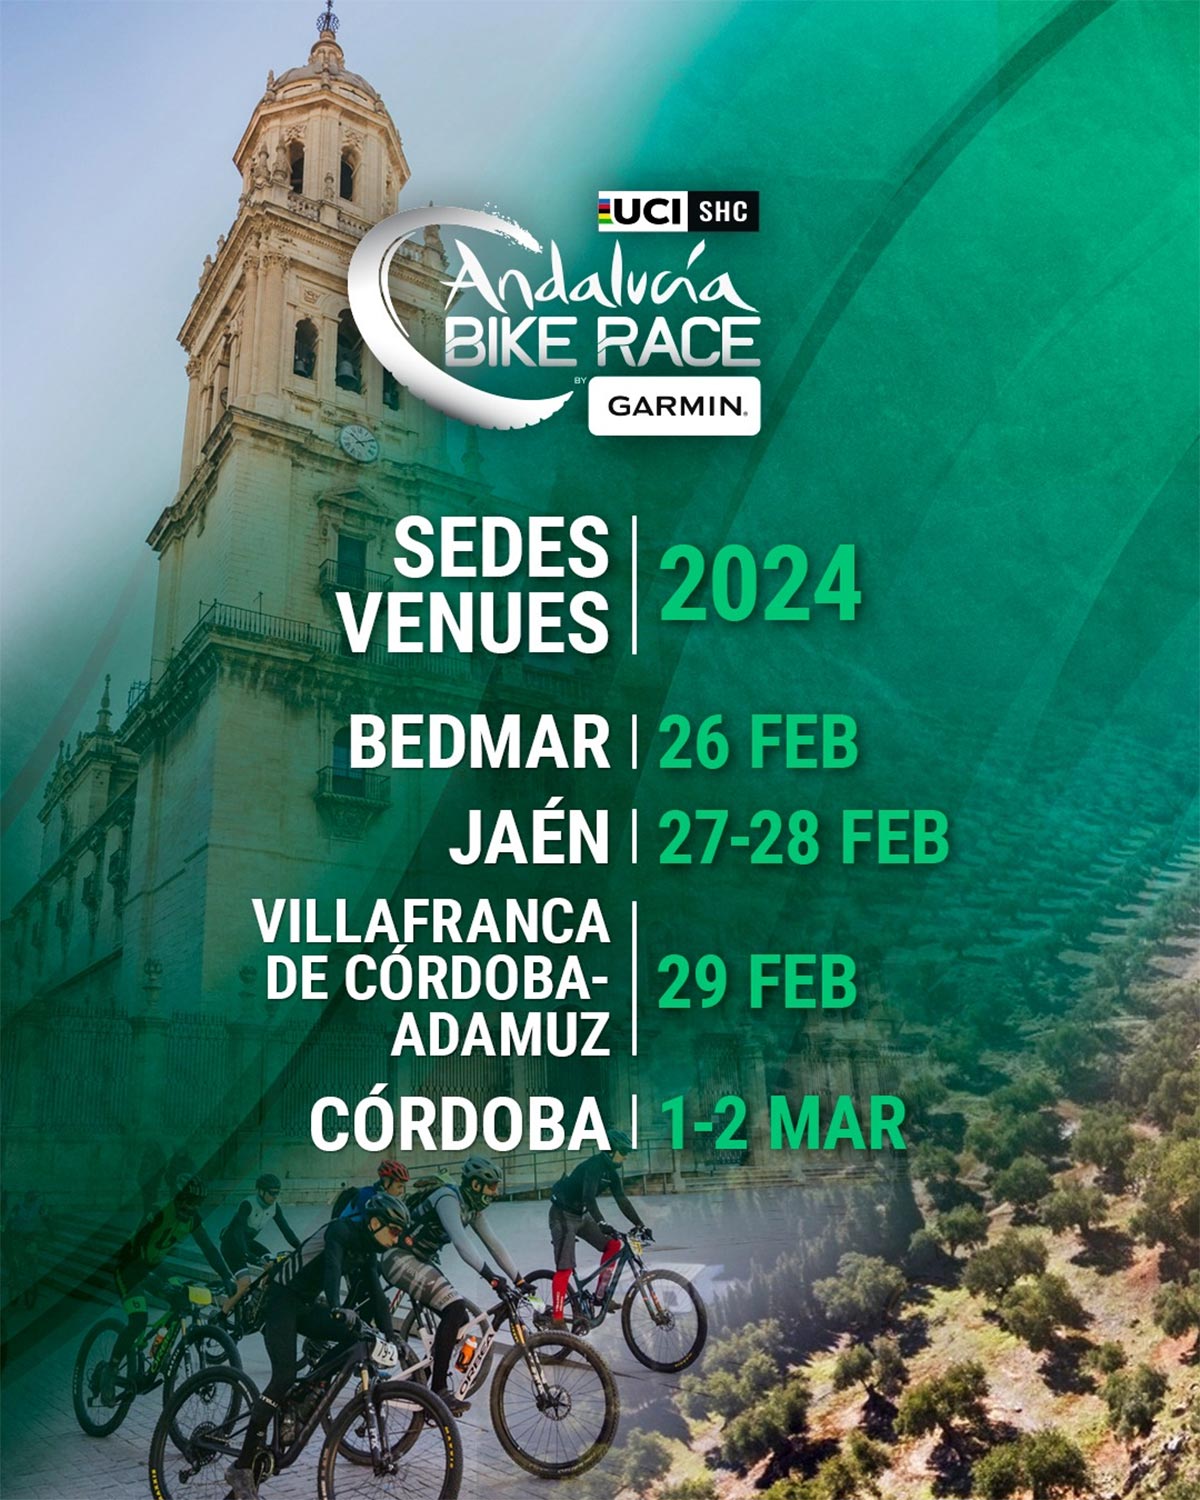 Desveladas las primeras novedades de la Andalucía Bike Race by Garmin 2024, que concluirá con una contrarreloj en Córdoba